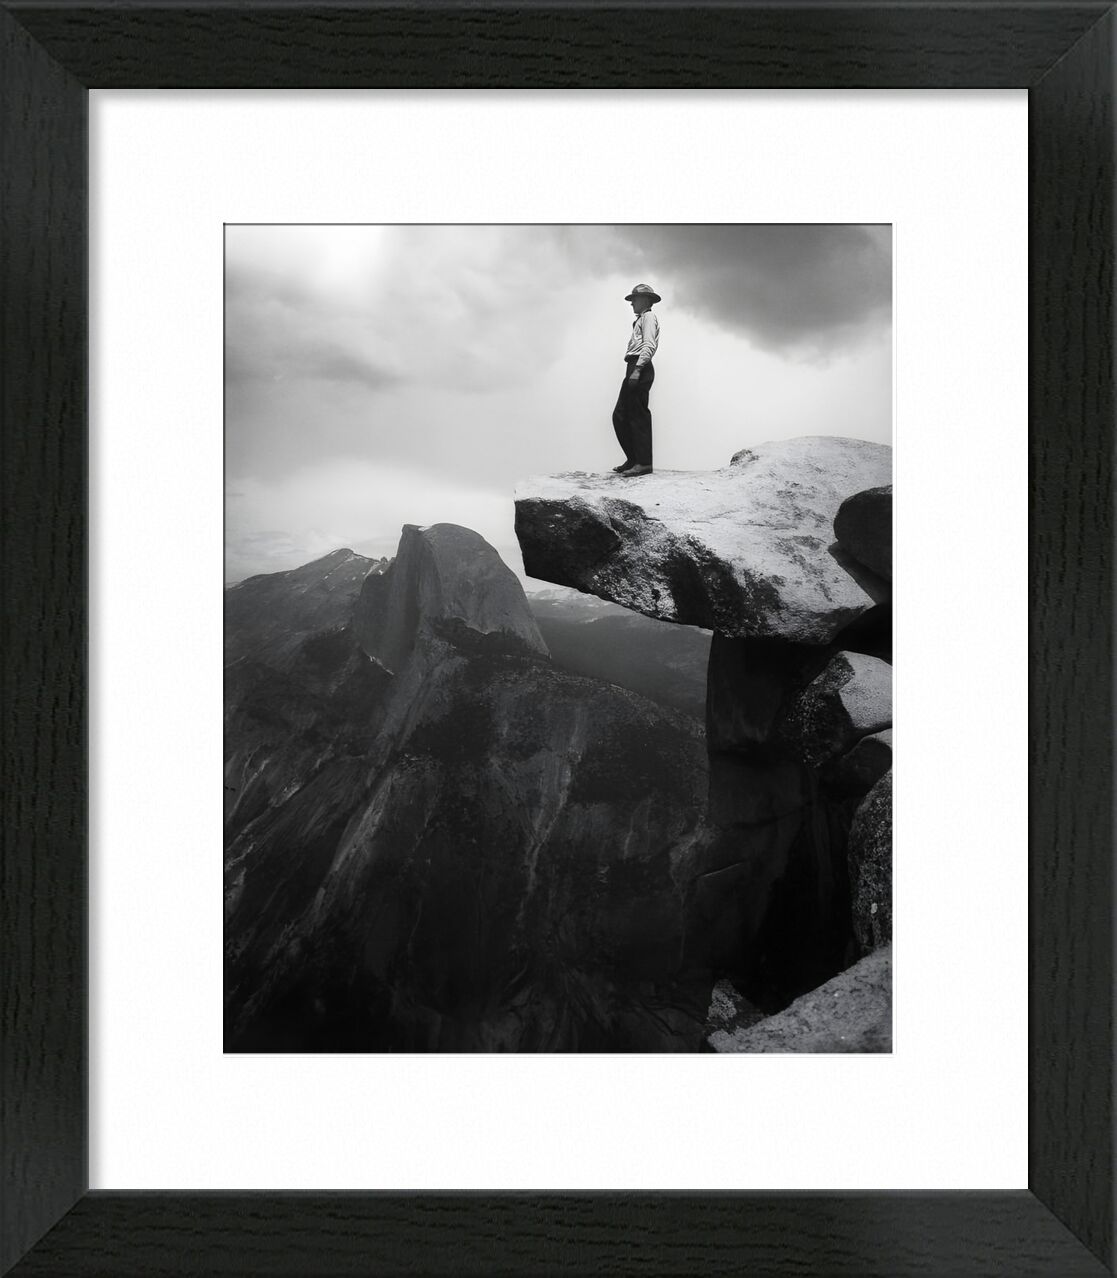 Yosemite, the cowboy - ANSEL ADAMS - 1948 von Bildende Kunst, Prodi Art, Berge, Wolken, dunkel, Schwarz und weiß, ANSEL ADAMS, Cowboy, Rock